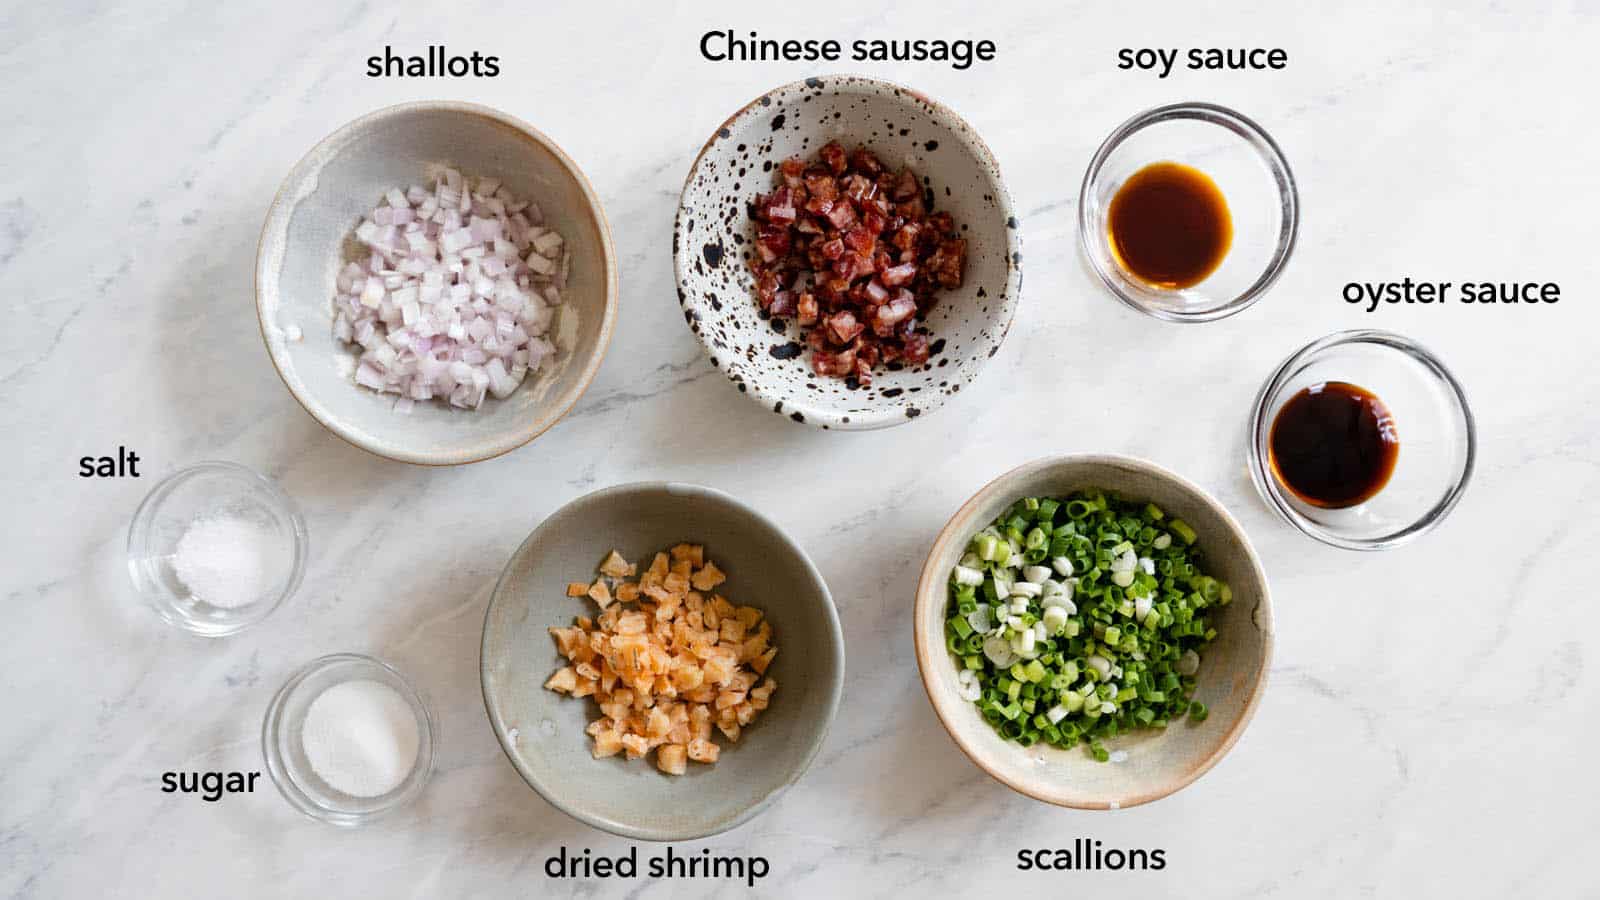 قطعات طعم دهنده برای کوفته های چینی خوشمزه: موسیر، میگو خشک، سوسیس چینی، پیاز سبز، سس سویا، سس صدف، نمک، شکر